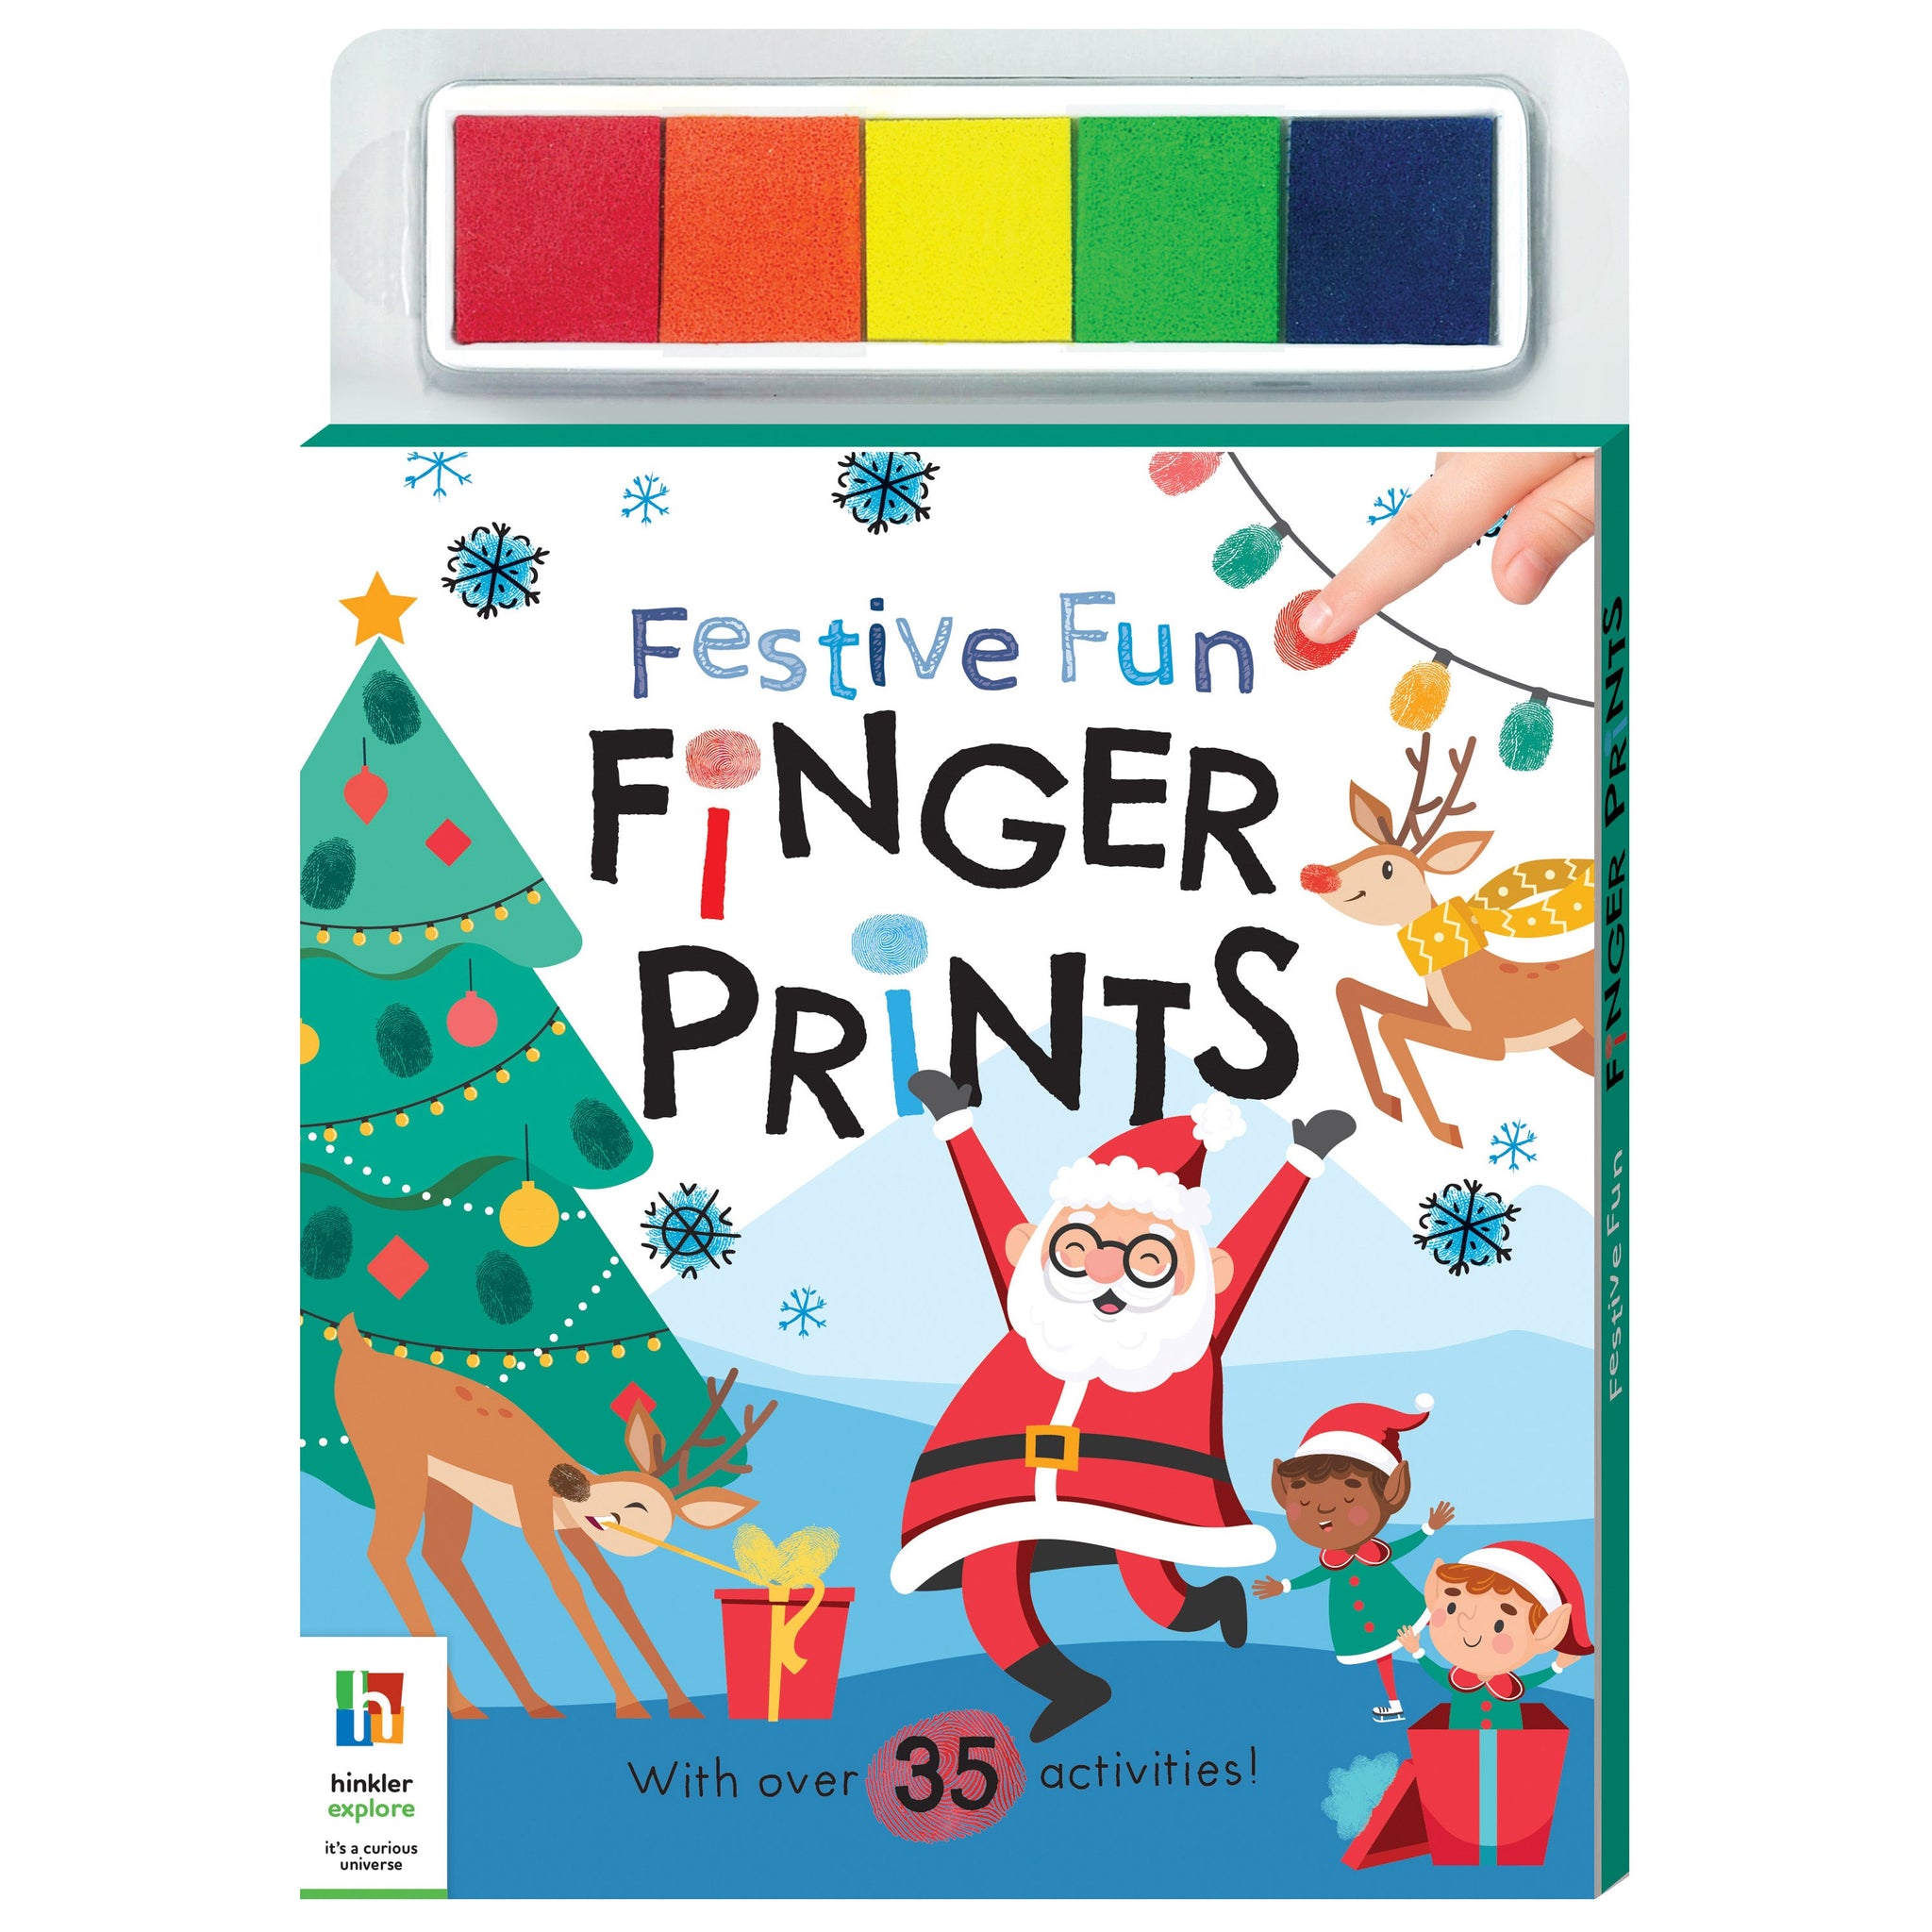 Festive Finger Prints